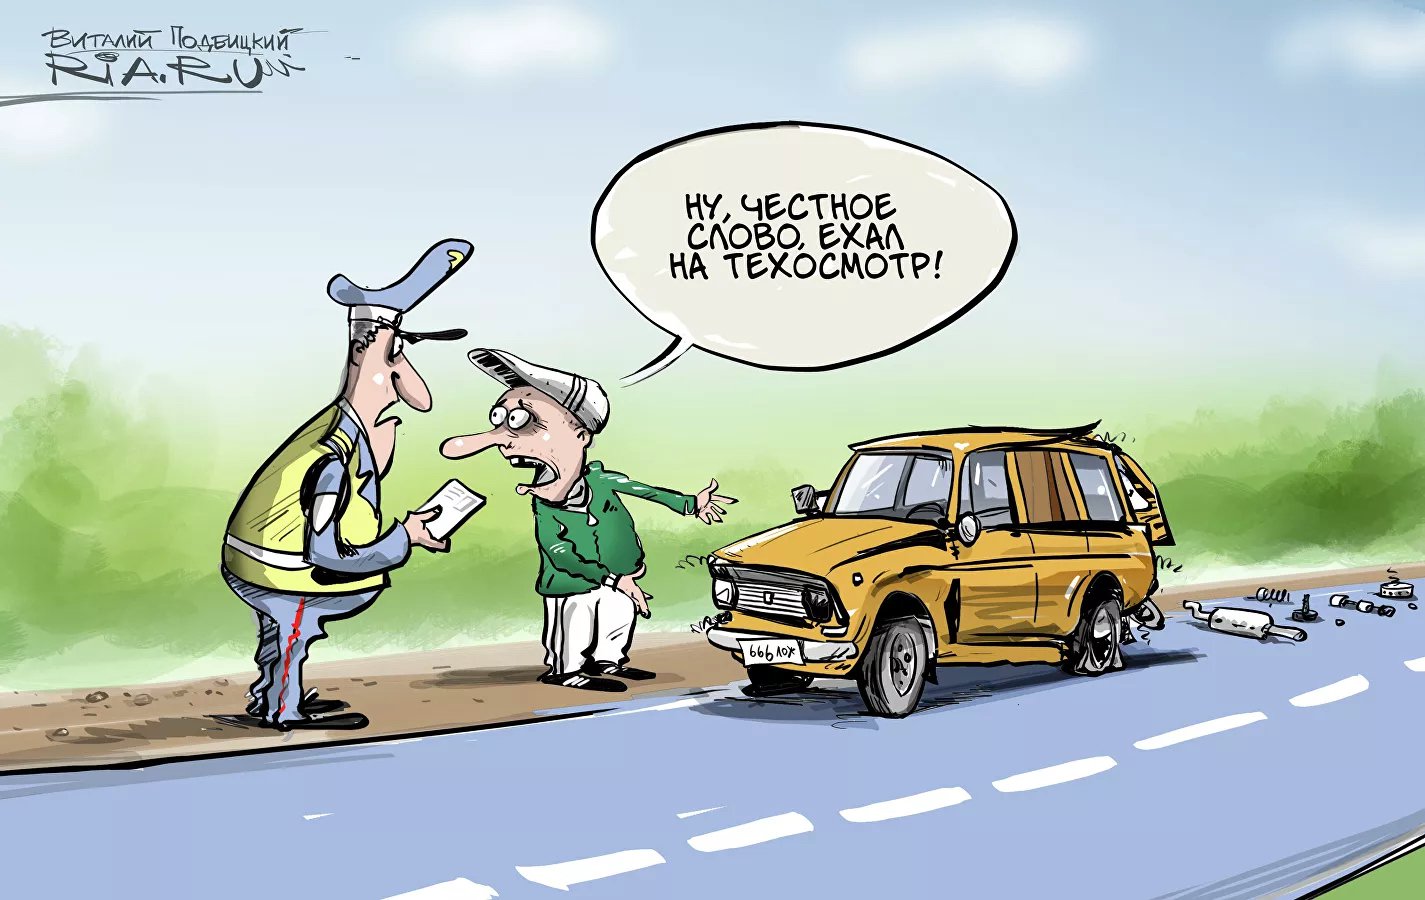 Карикатура "Крепче за баранку держись, шофер", Виталий Подвицкий